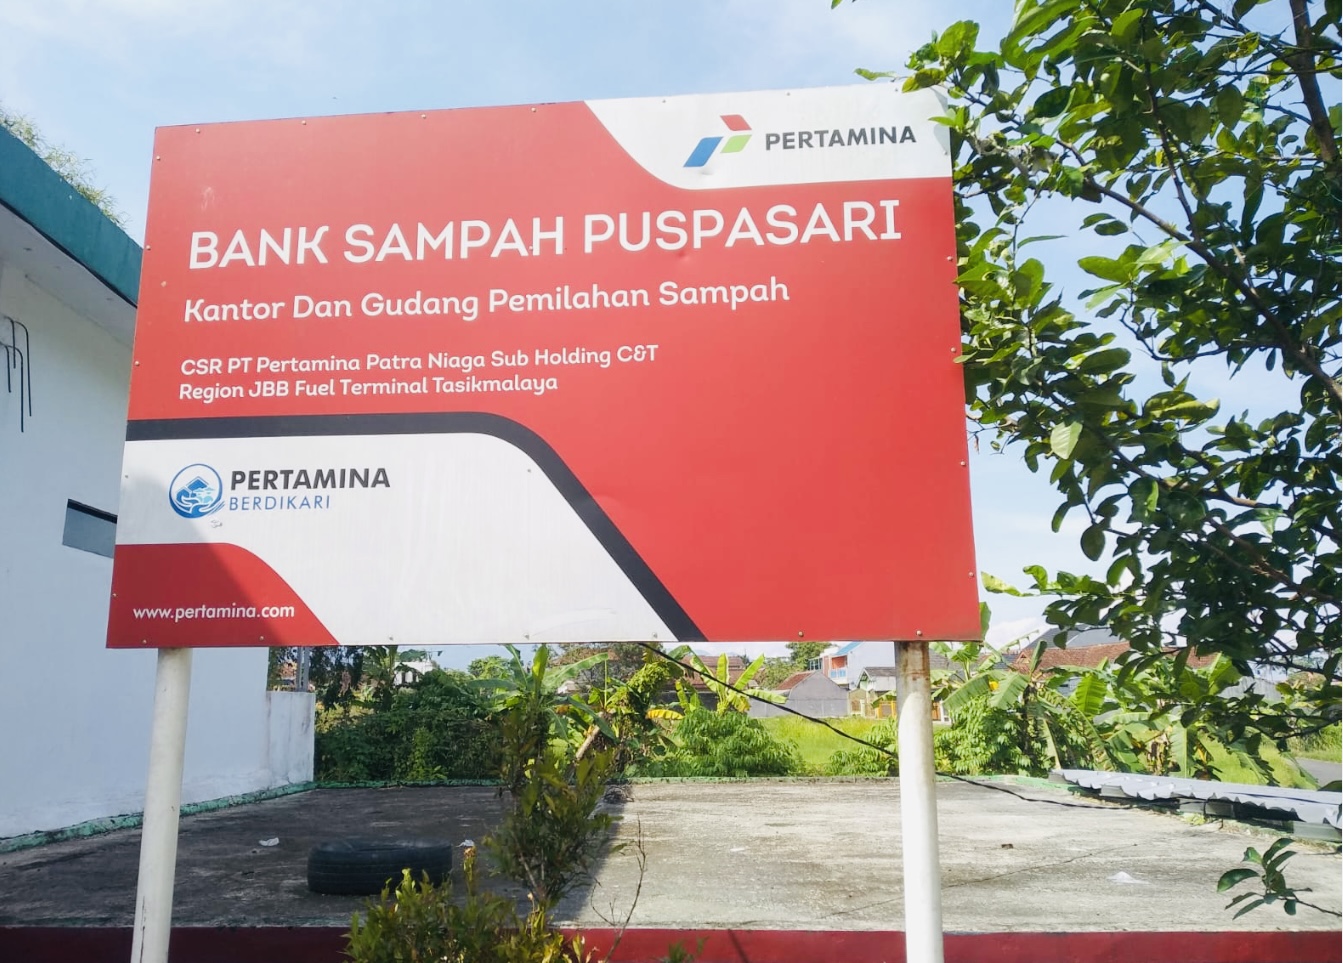 Bank Sampah Puspasari Jadi Pusat Percontohan dan Pembelajaran untuk Pembentukan Bank Sampah